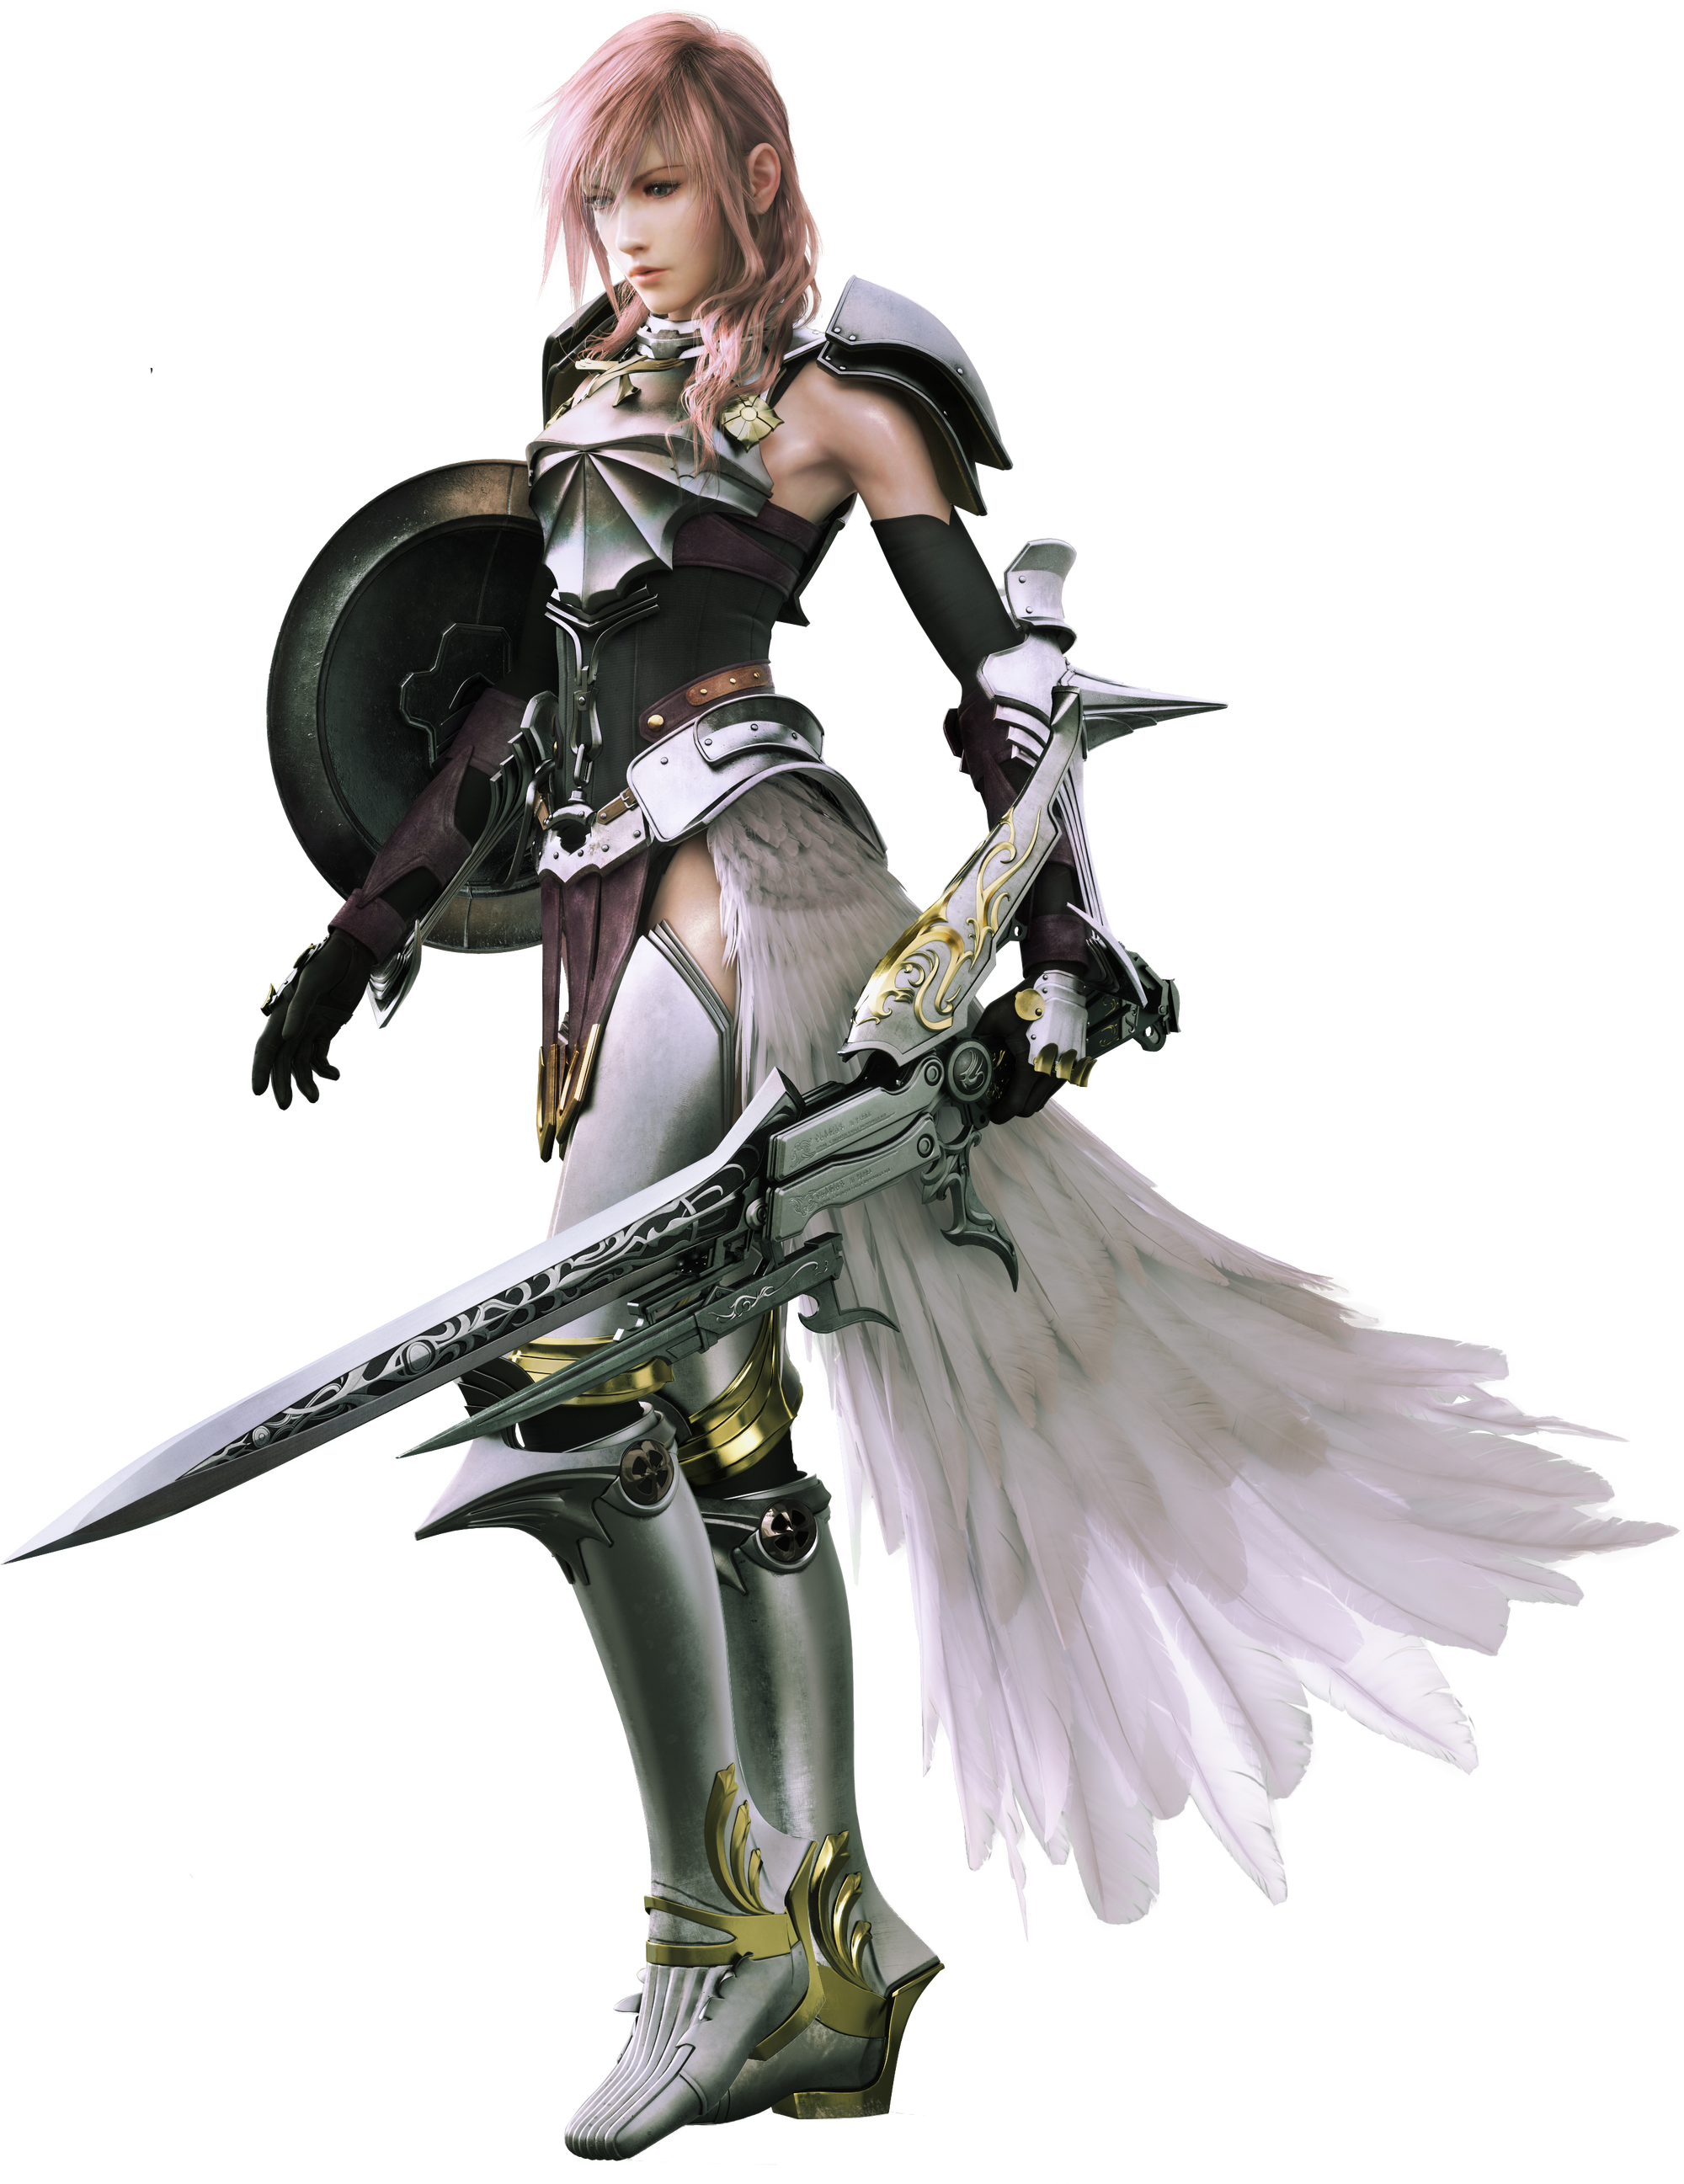 Lightning Final Fantasy Xiii Vs Battles Wiki Fandom Powered By Wikia